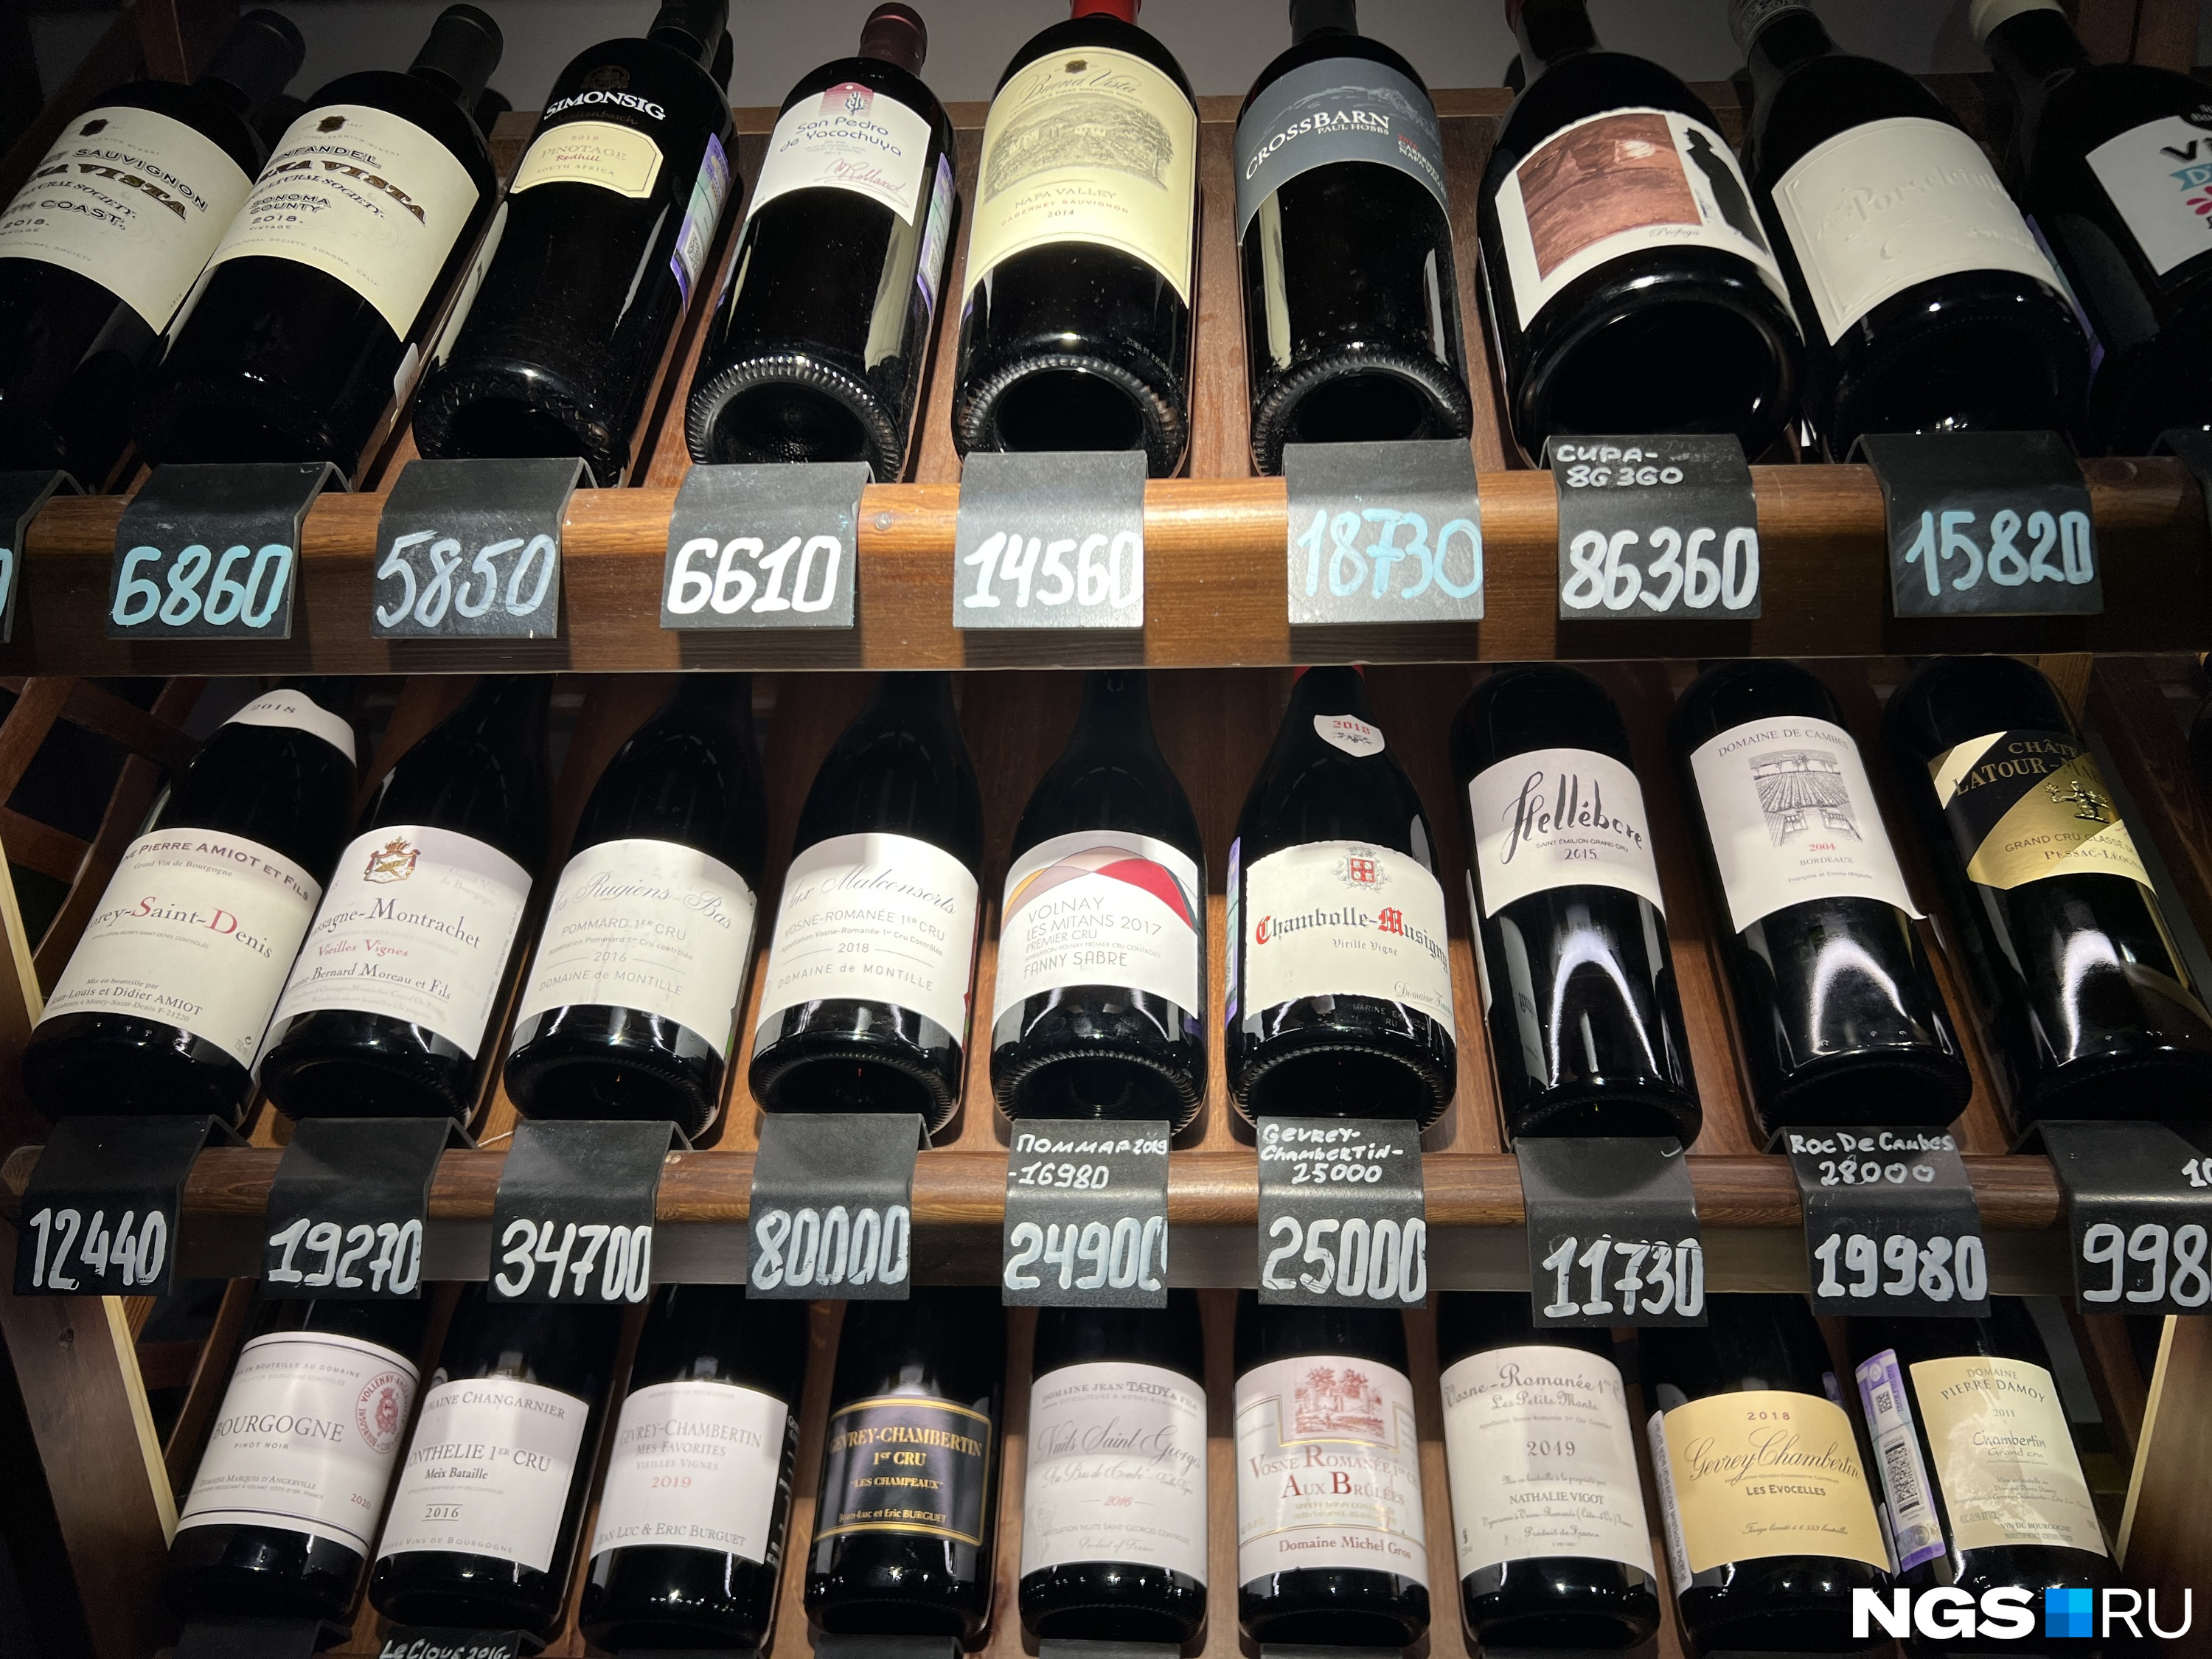 Винные полки заведения — по таким ценам вино продается в ресторане